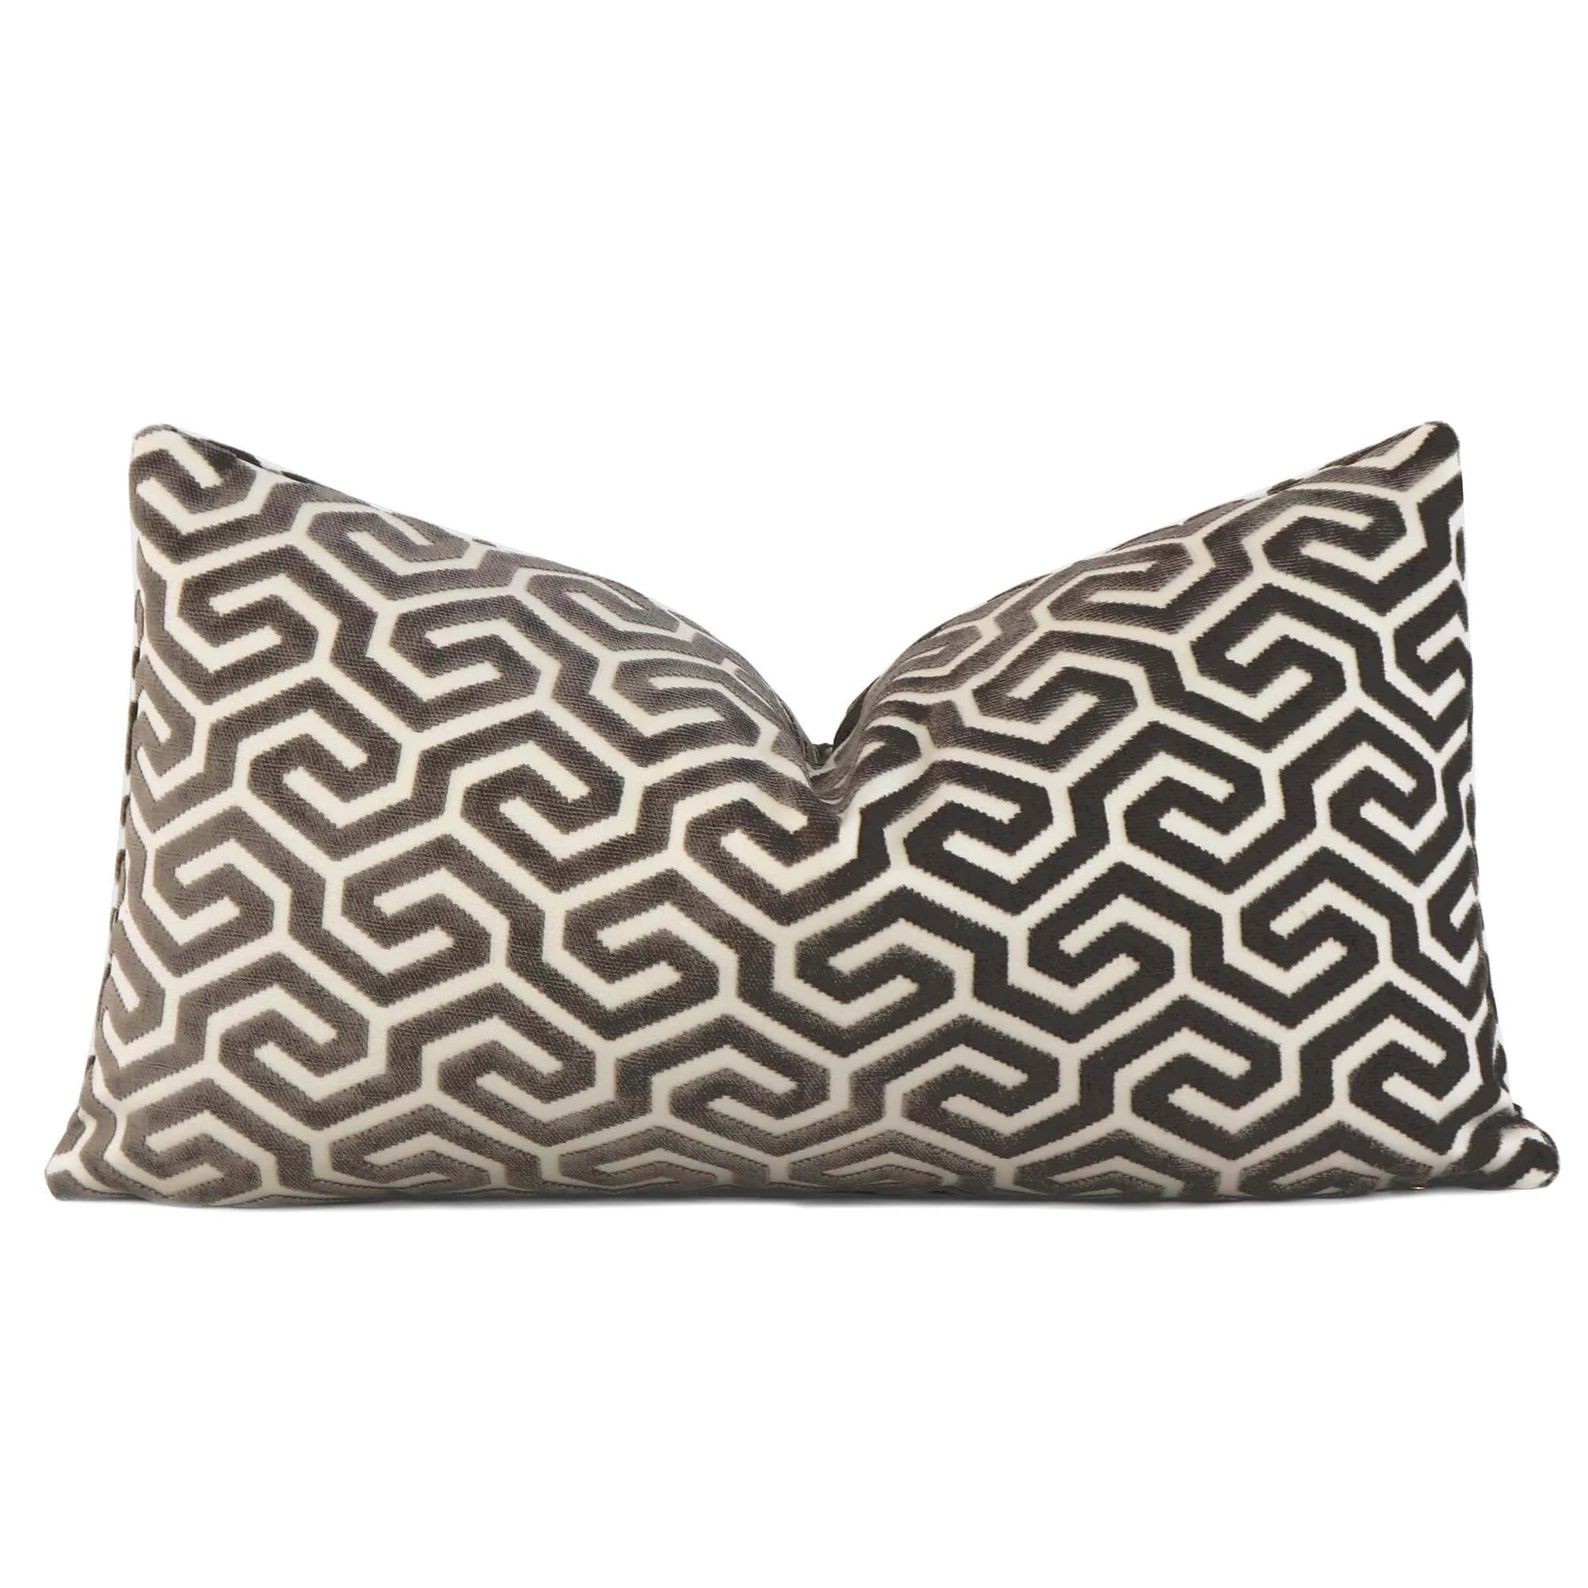 Cut Velvet Ming Fret Taupe Lumbar Pillow Cover with Zipper, Schumacher Geometric Maze Accent Toss... | Etsy (US)